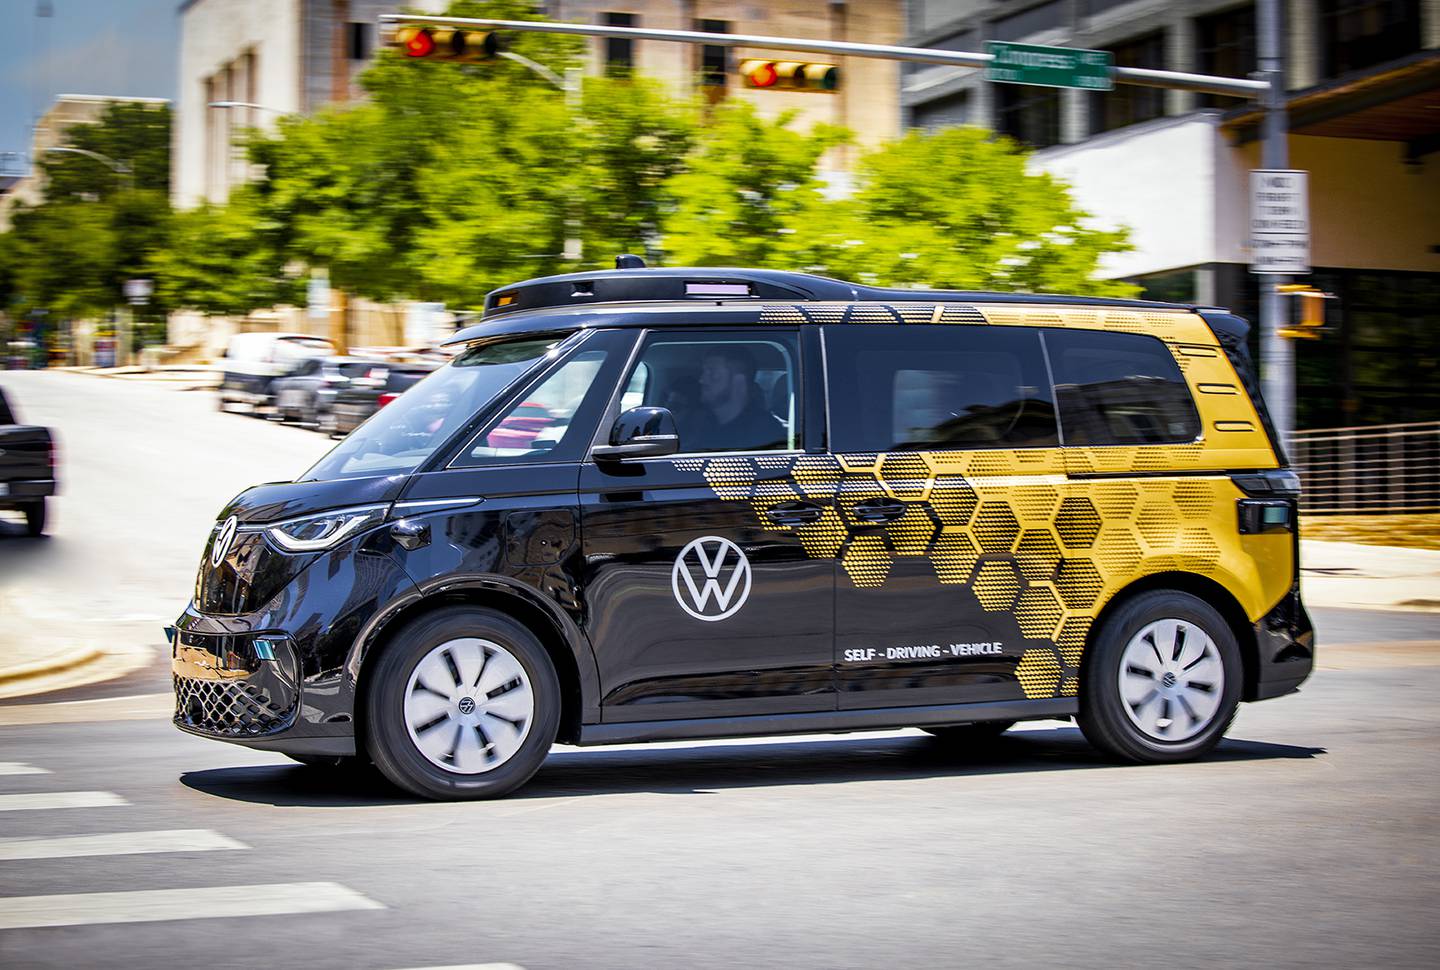 VW self-driving vans